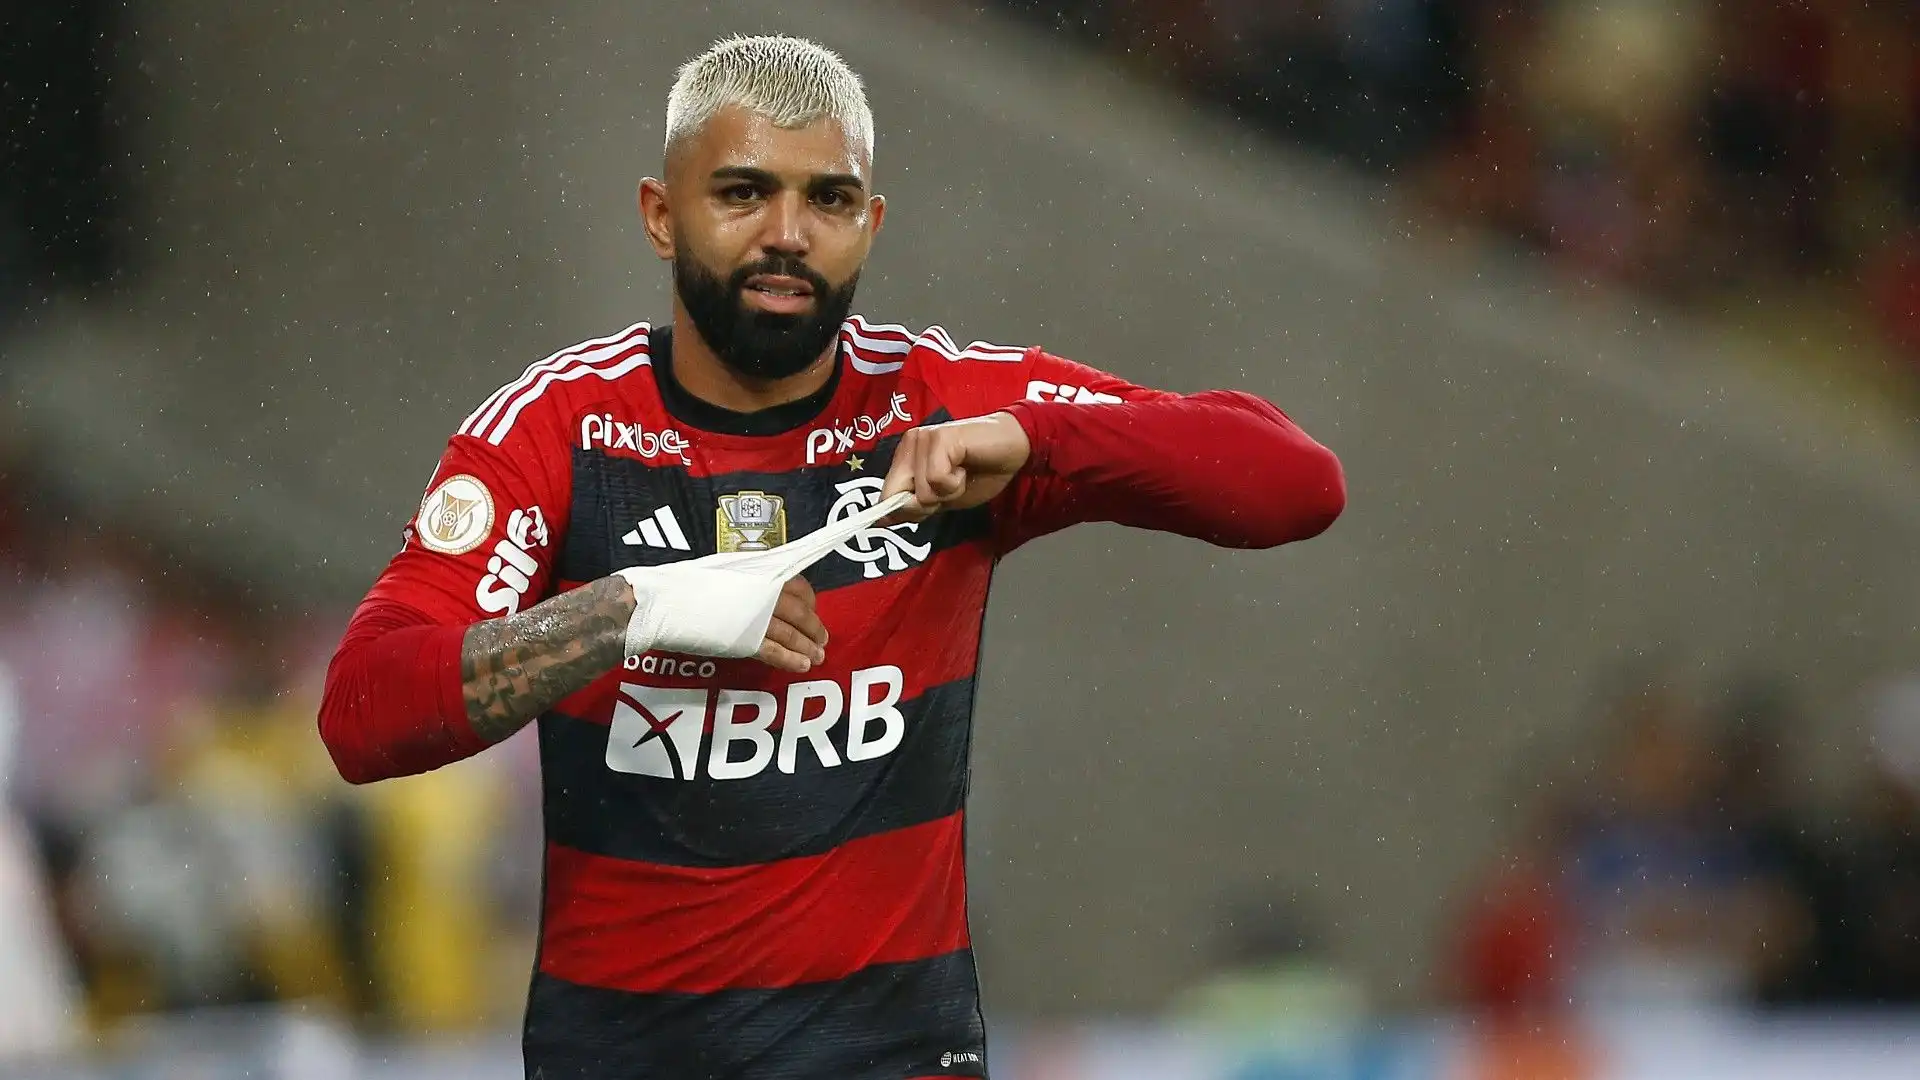 L'Inter l'ha ceduto in prestito prima al Benfica, poi al Santos e infine al Flamengo che l'ha acquistato nel 2019